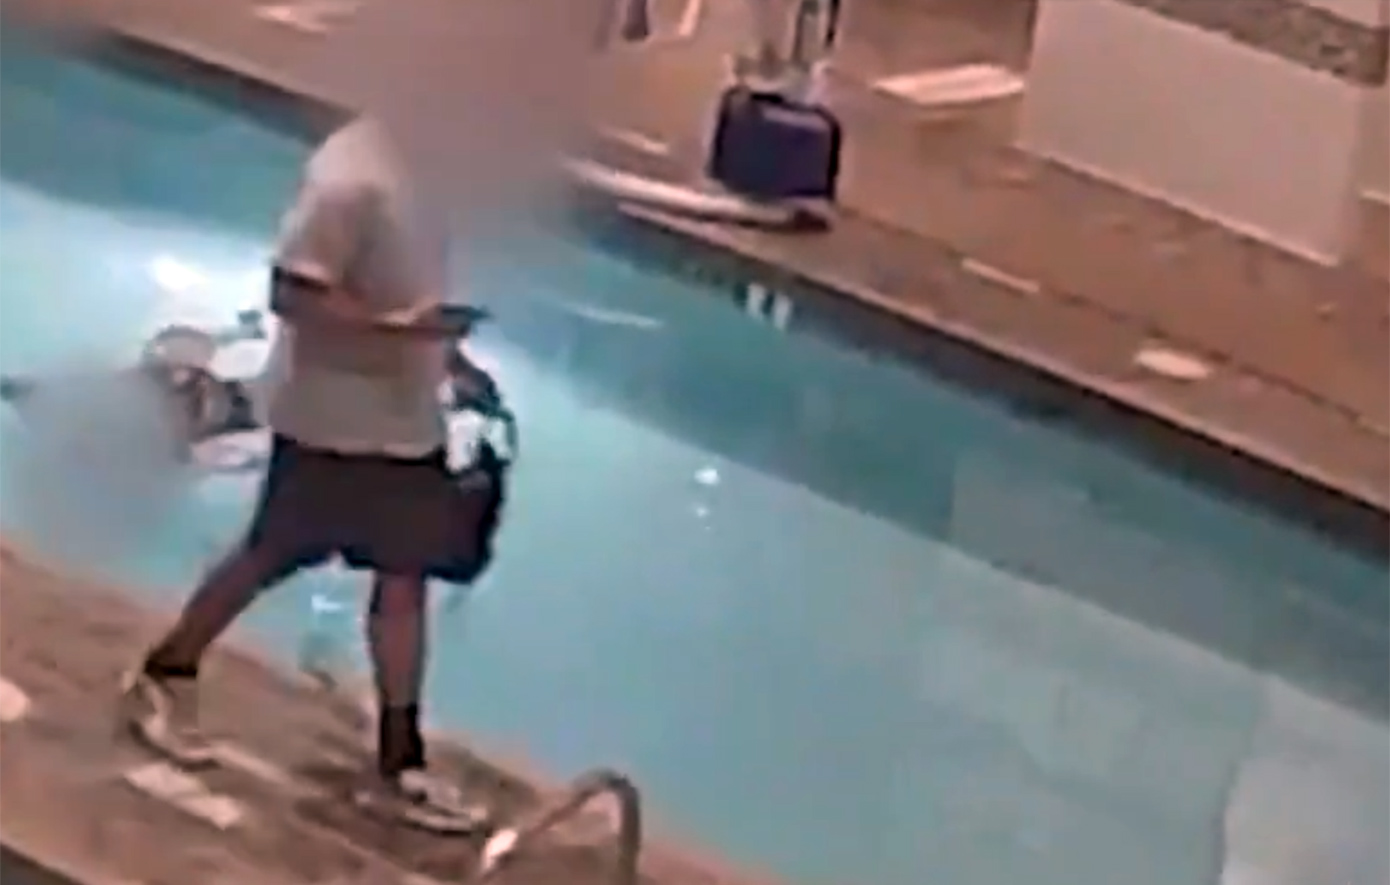 Συγκλονιστικό βίντεο δείχνει γυναίκα να πνίγεται σε πισίνα στις ΗΠΑ για αρκετή ώρα και οι γύρω της να αδαιφορούν